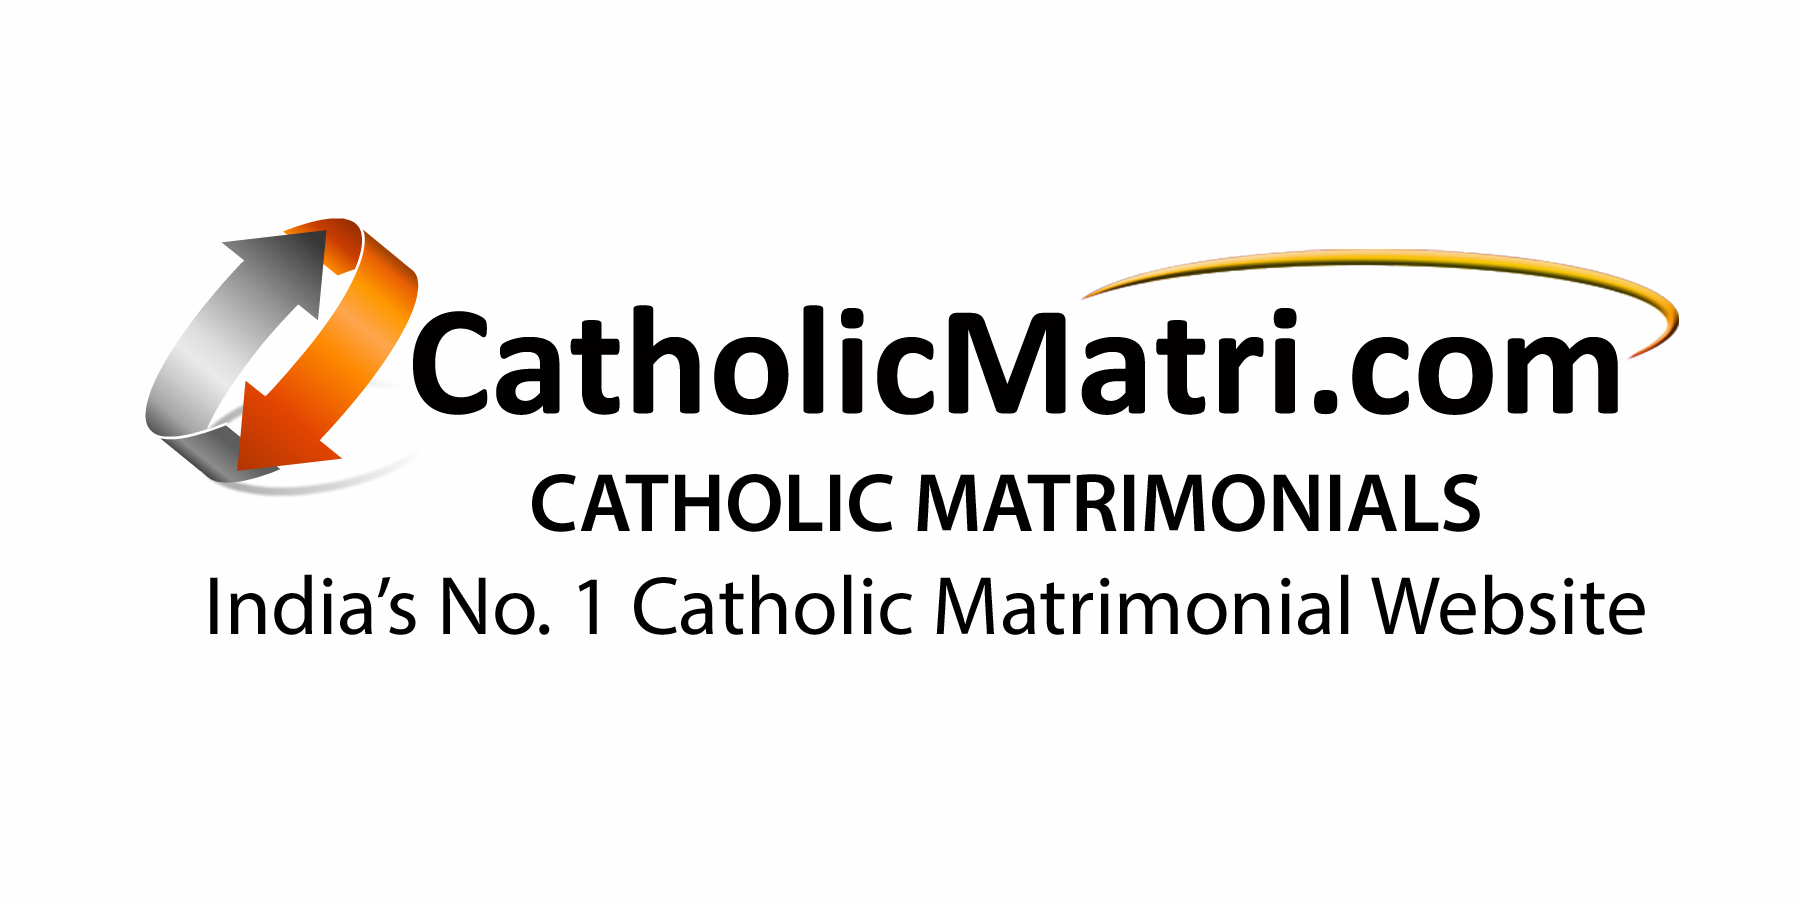 CatholicMatri.com